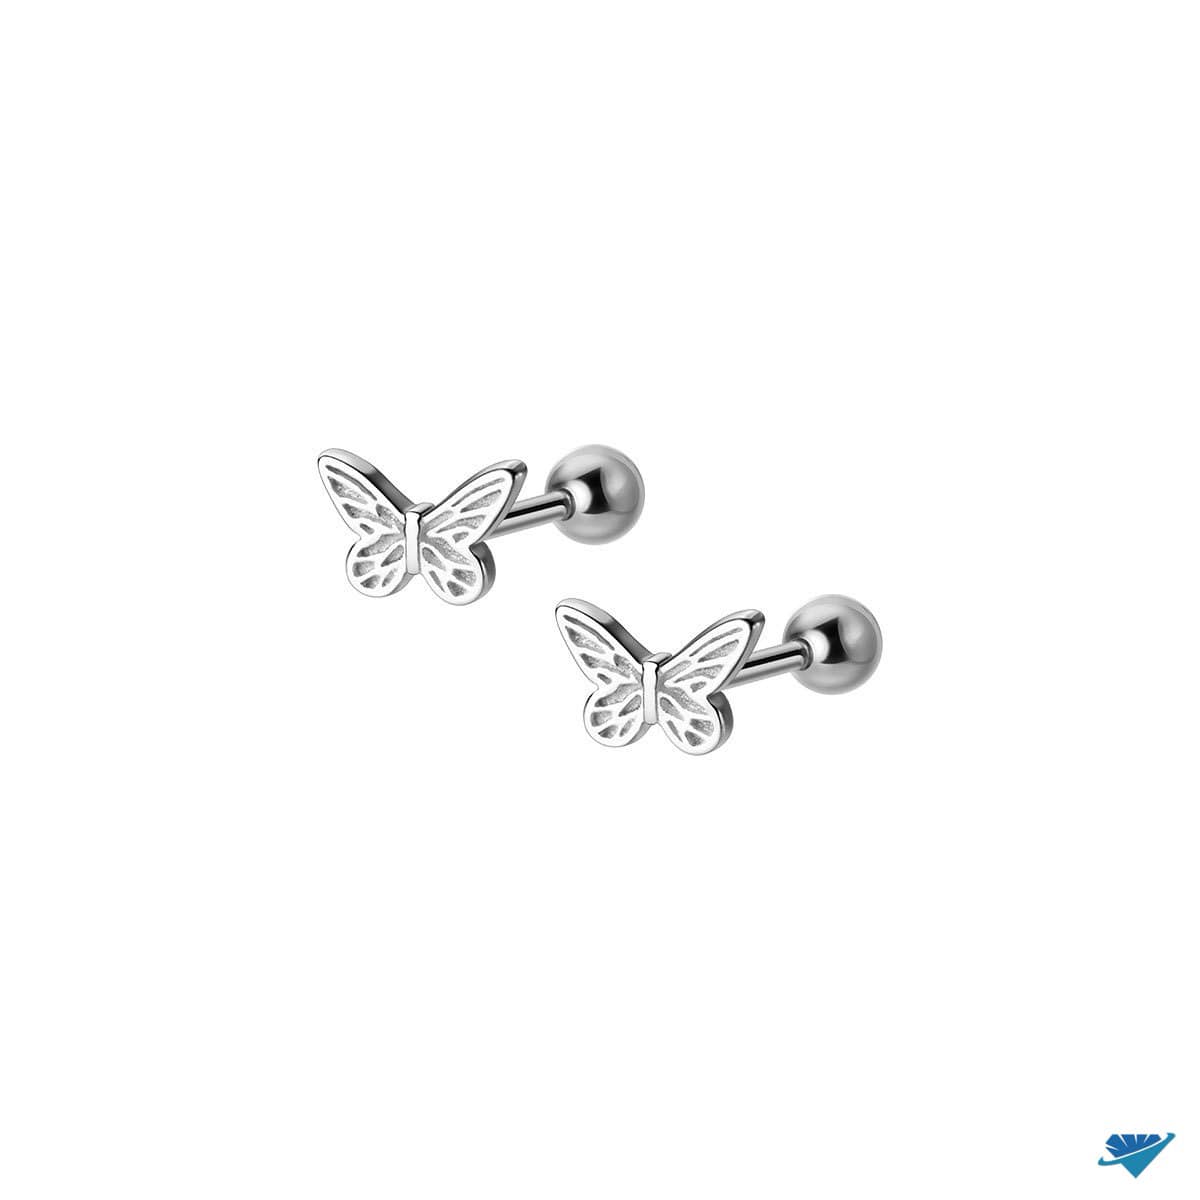 Bông tai bạc hình bướm chất liệu bạc s925 MS045b